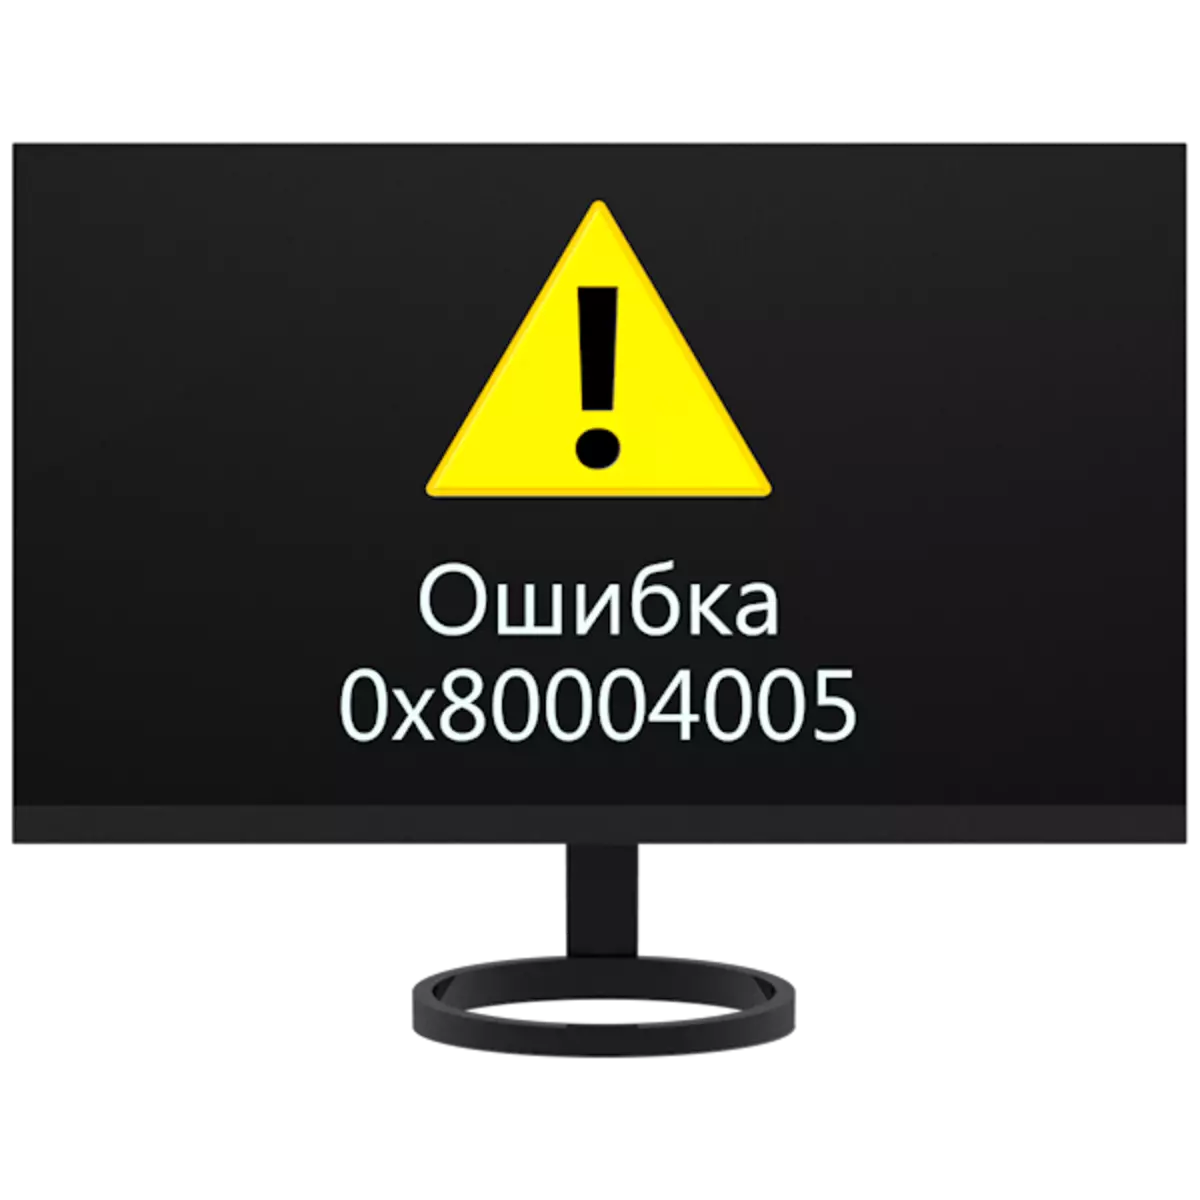 Korekta błędów 0x80004005 w systemie Windows 7